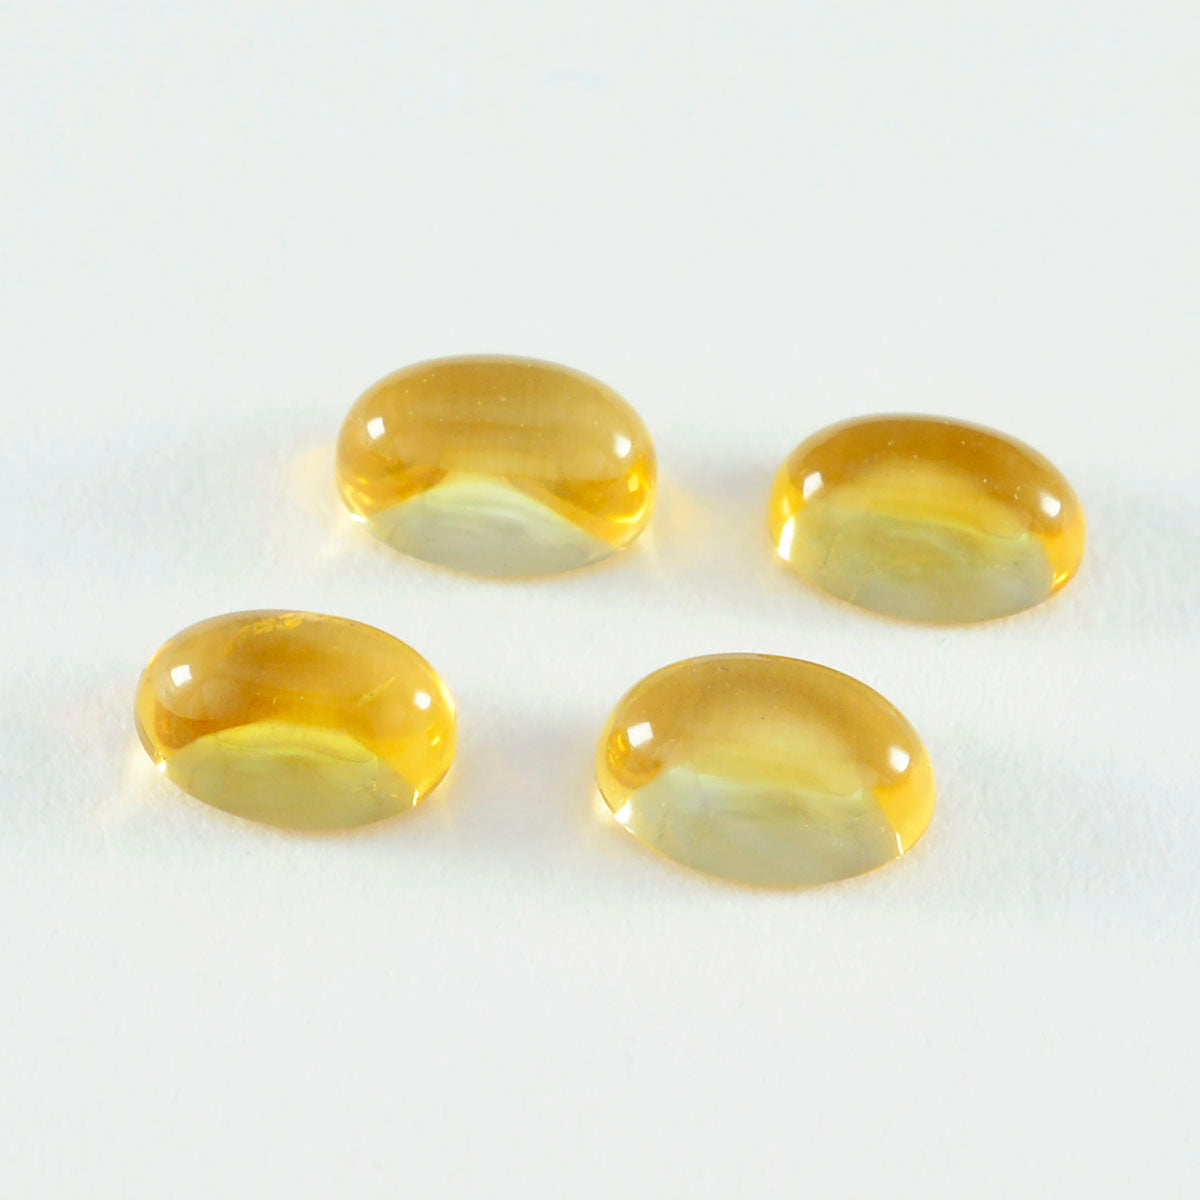 riyogems 1шт желтый цитрин кабошон 7x9 мм овальной формы красивые качественные драгоценные камни